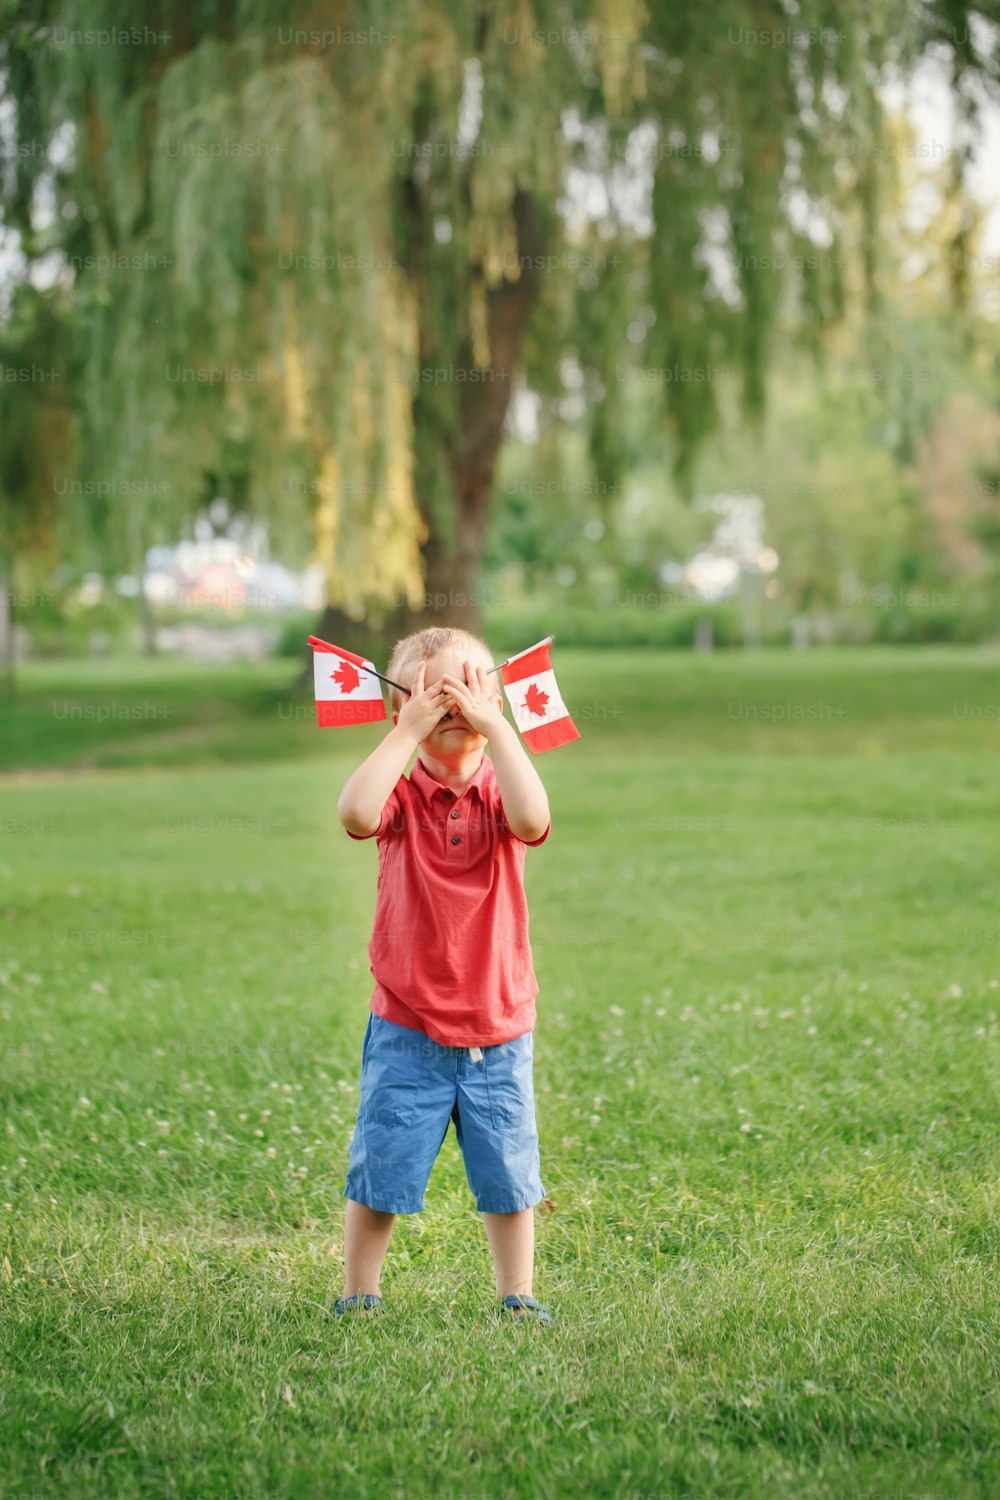 Bambino caucasico in piedi sull'erba verde nel parco all'esterno e tenendo in mano la bandiera canadese ondeggiante. Bambino bambino cittadino che celebra il Canada Day il 1 ° luglio.